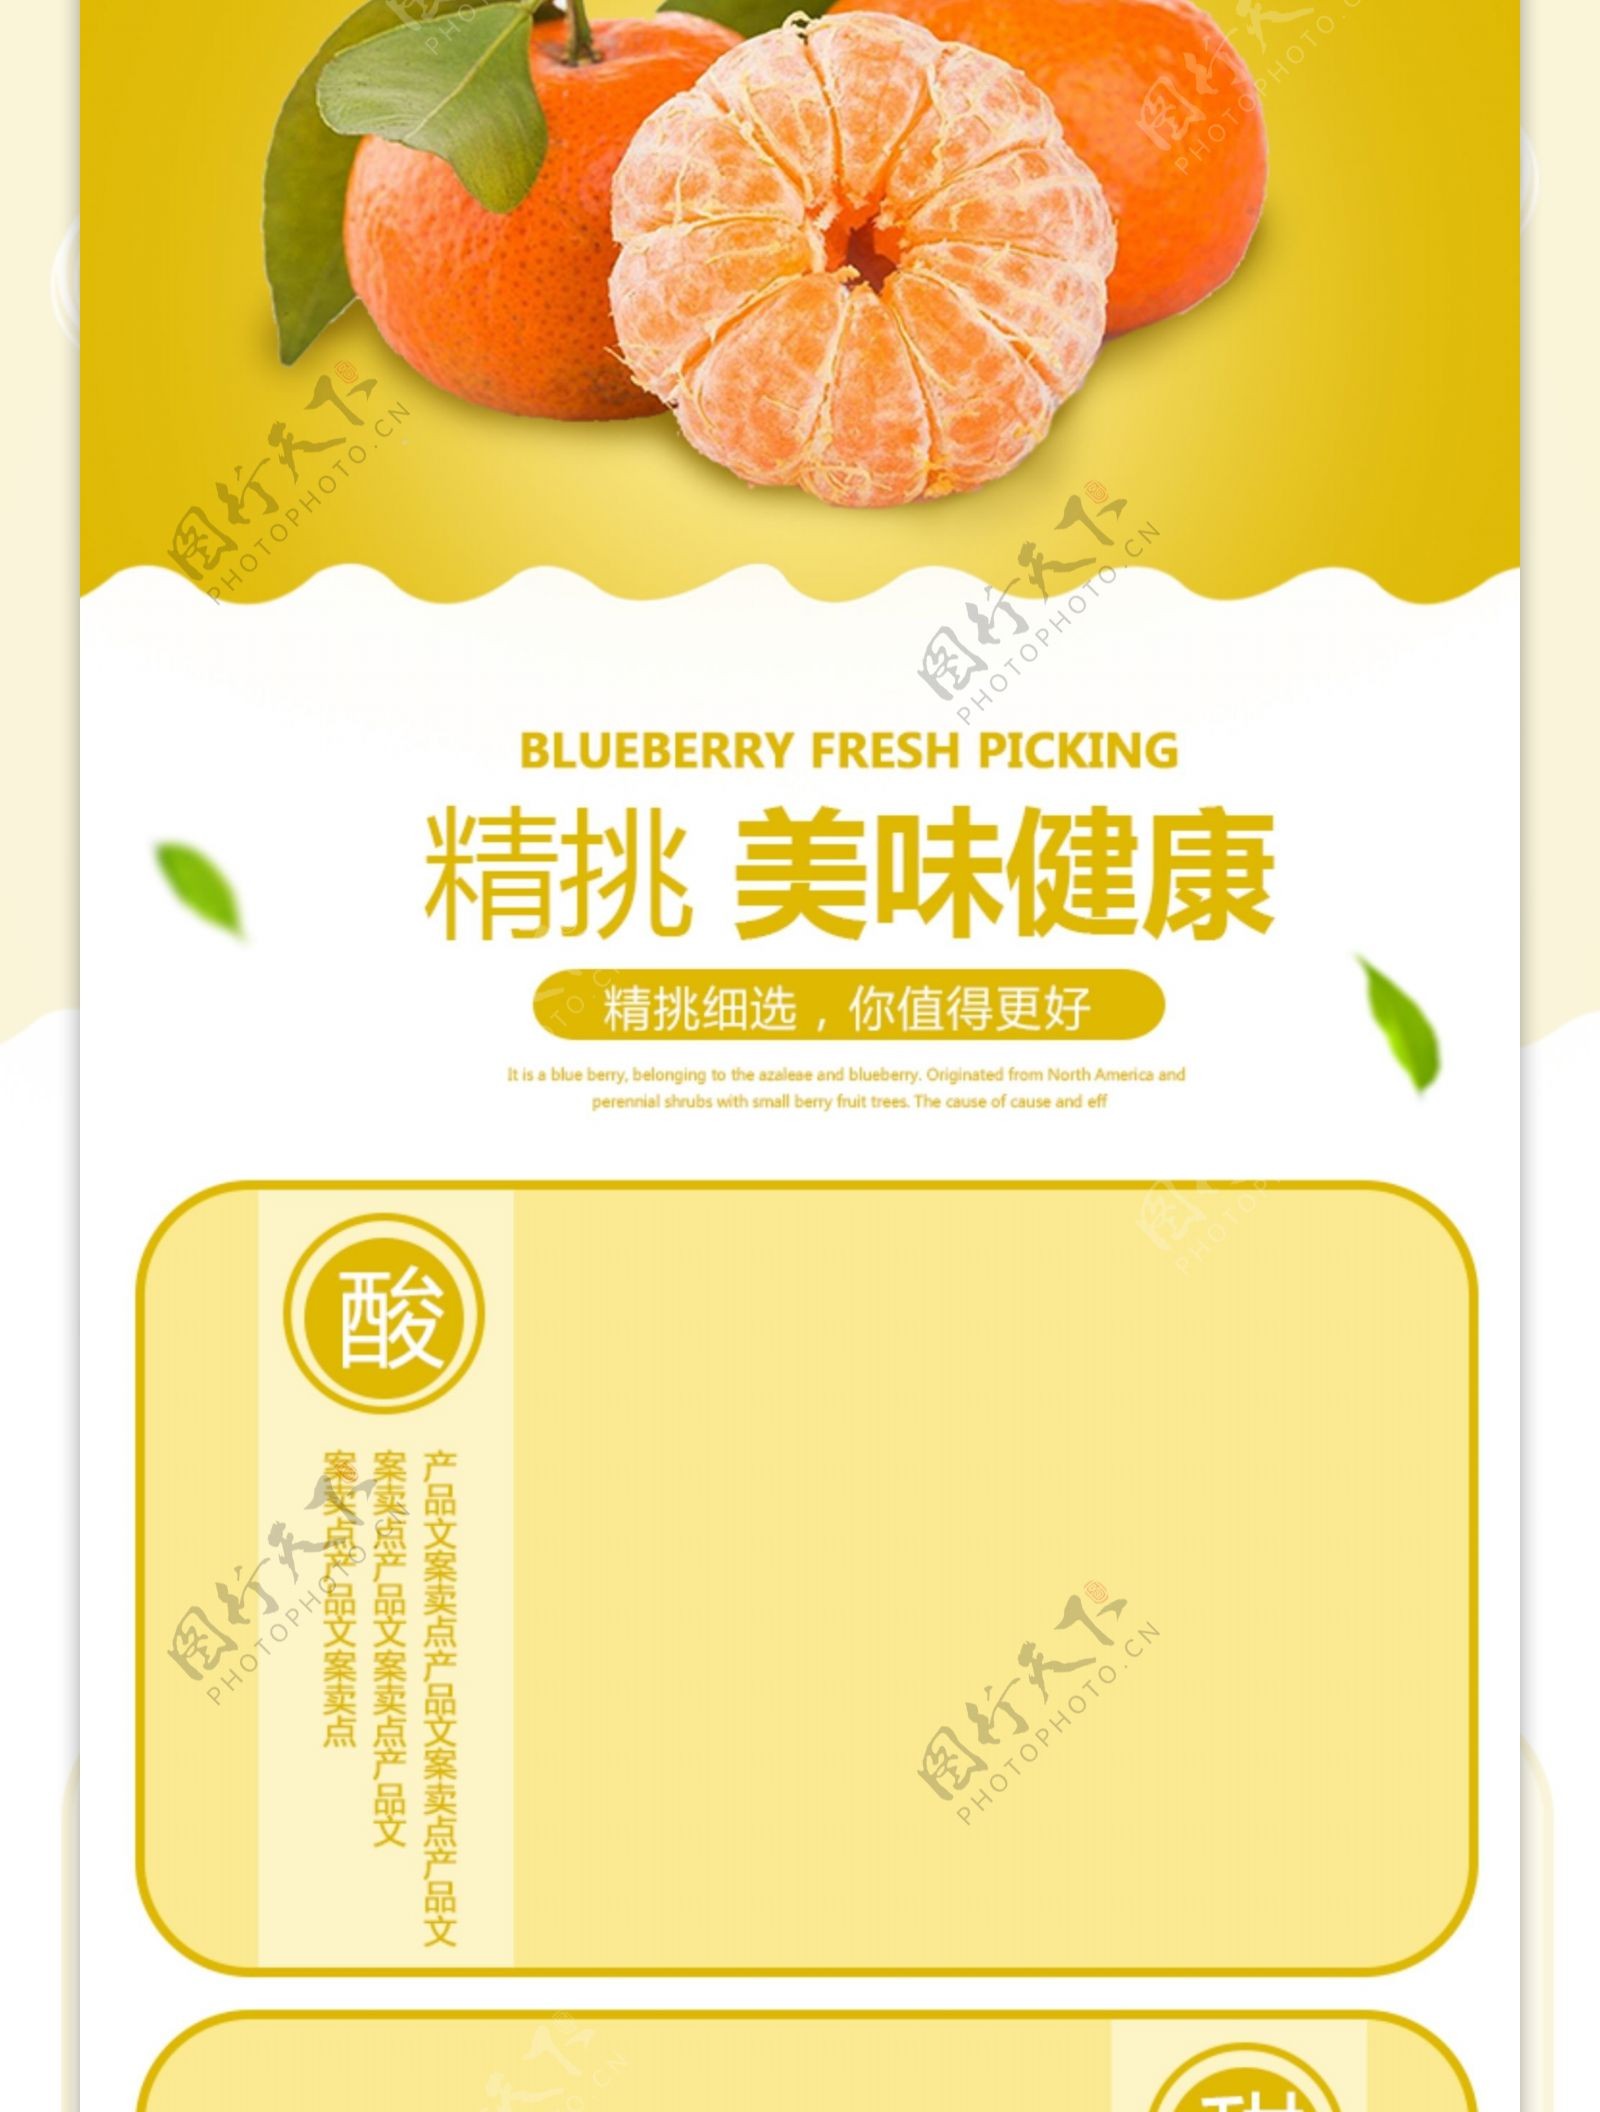 应季水果柑橘促销淘宝详情页